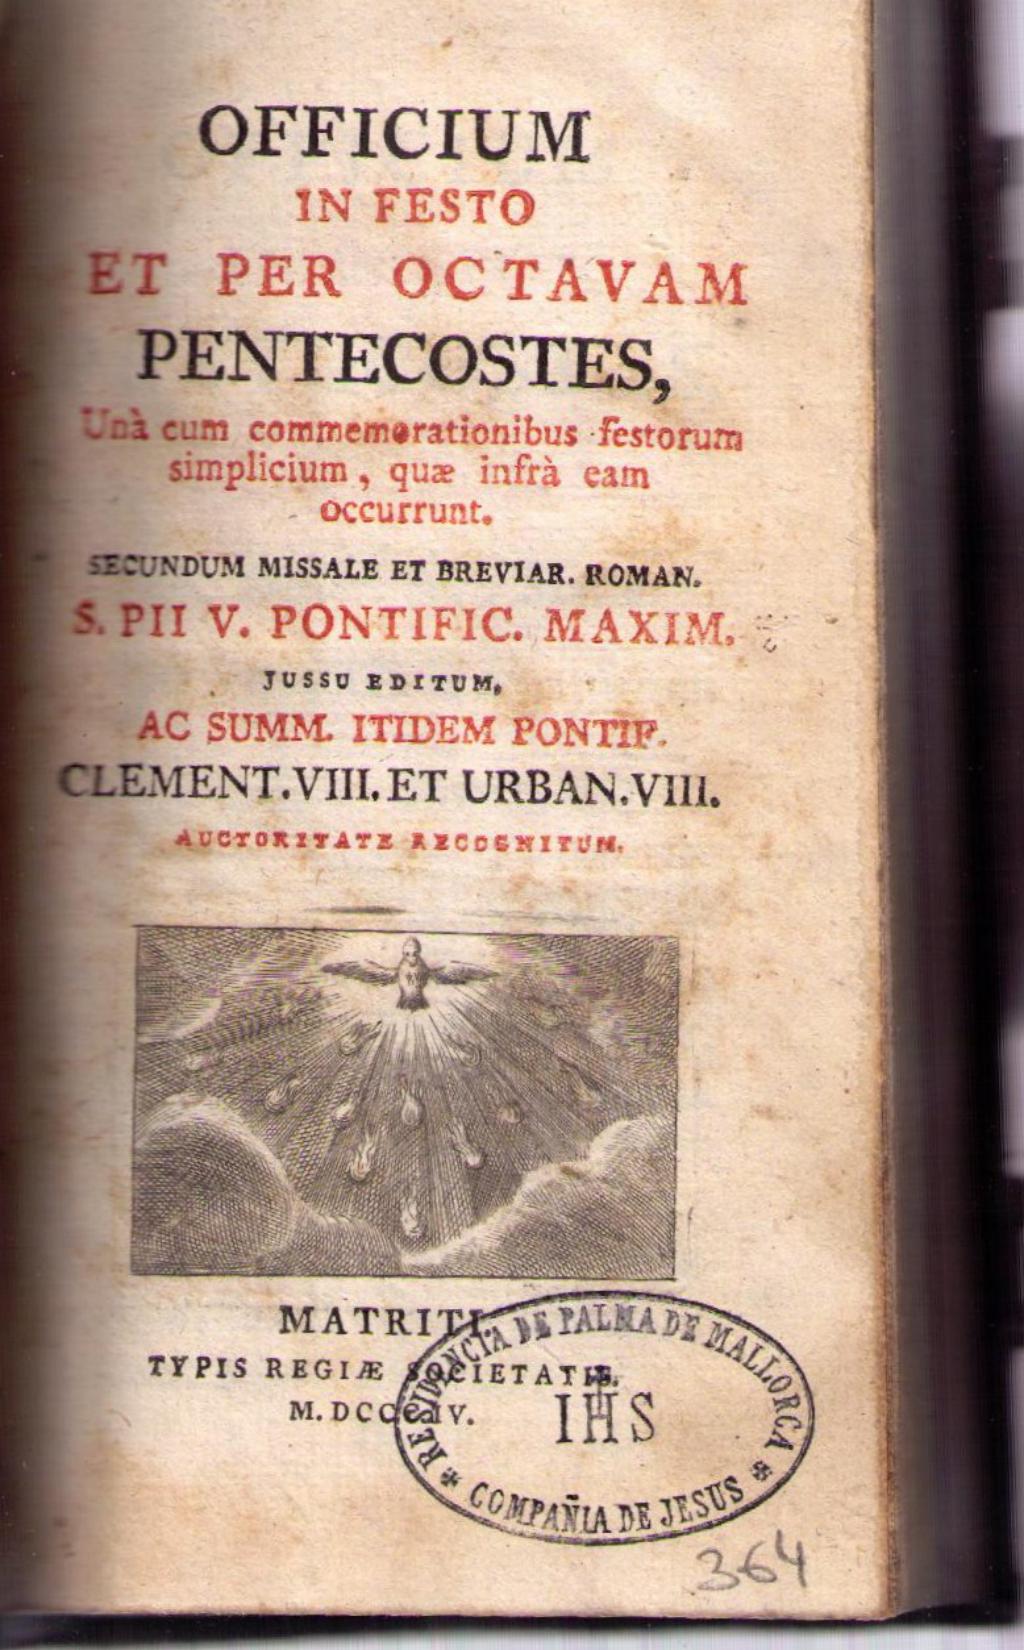 Coberta de Oficium infesto et per octavam Pentecostes